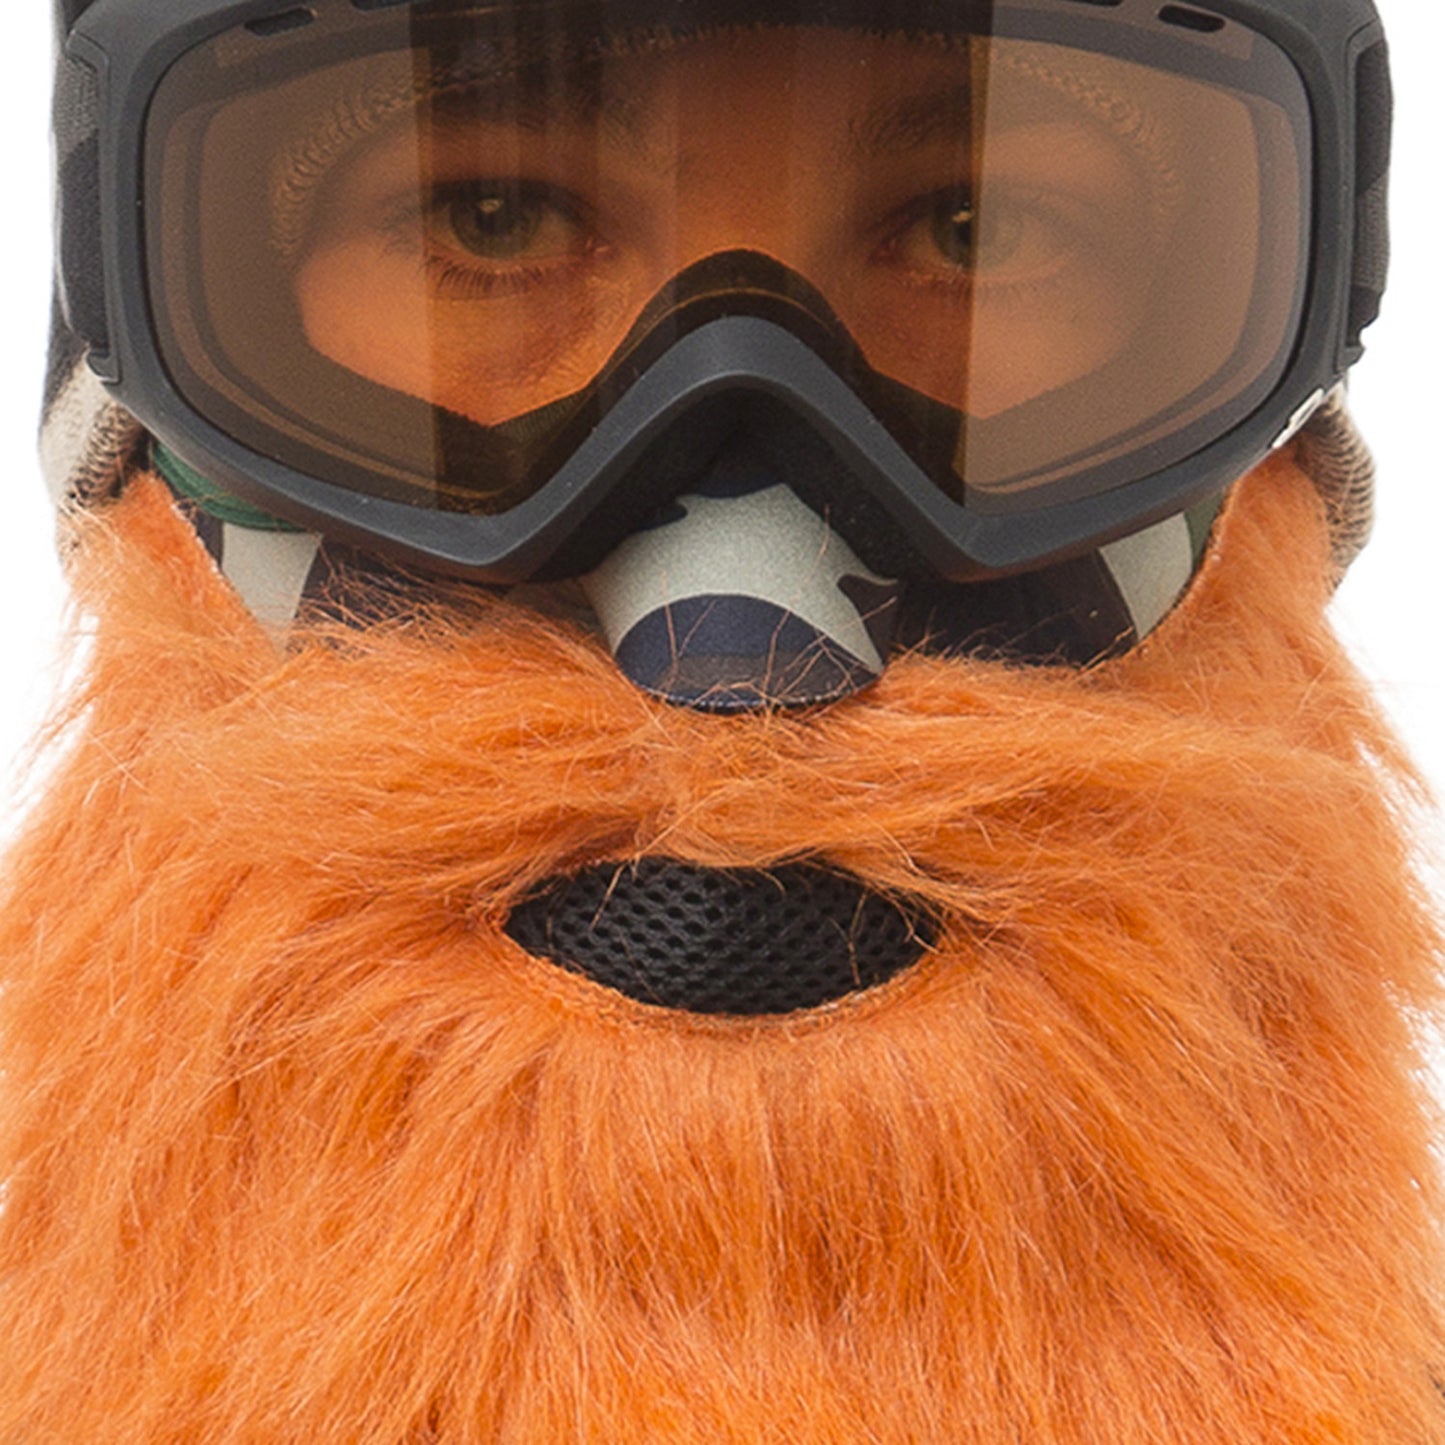 Beardski Hunter Skimask